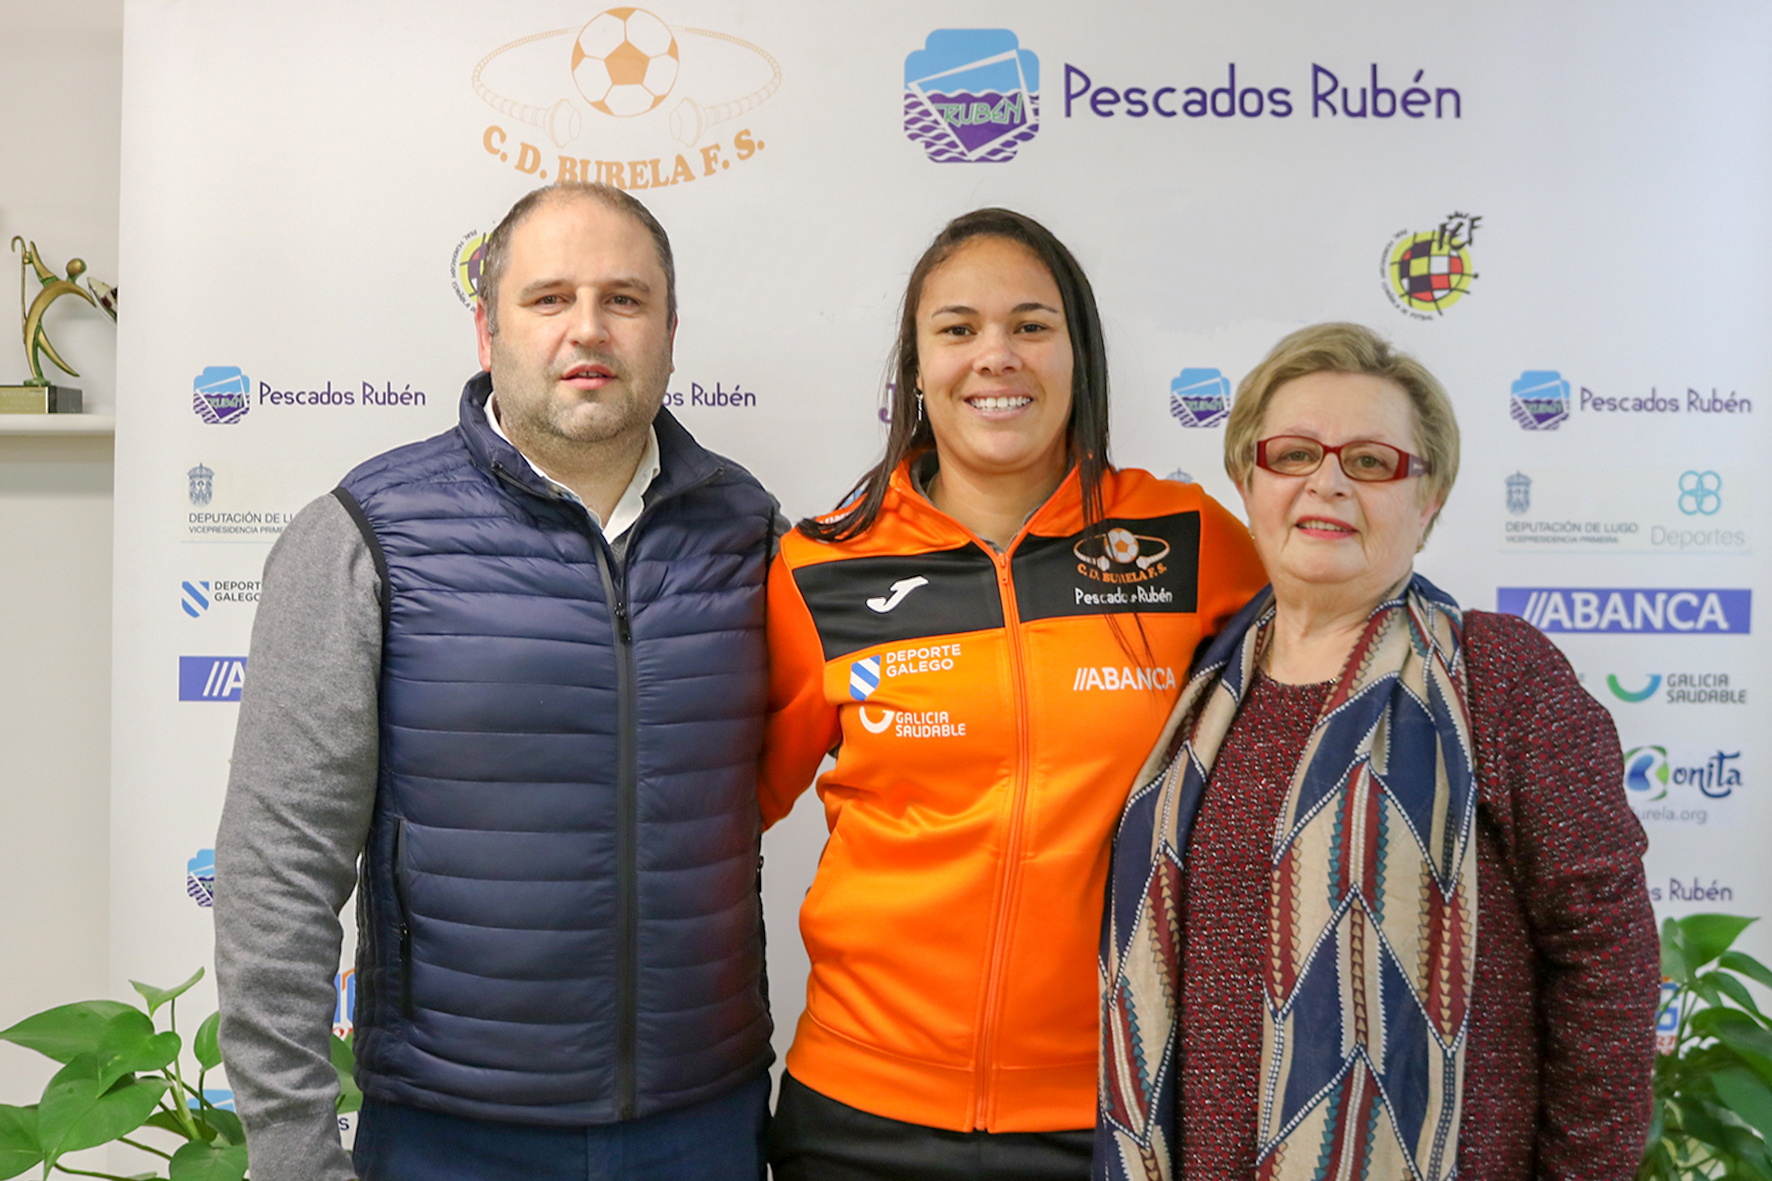 Camila Gadeia vuelve a Pescados Rubén Burela FS